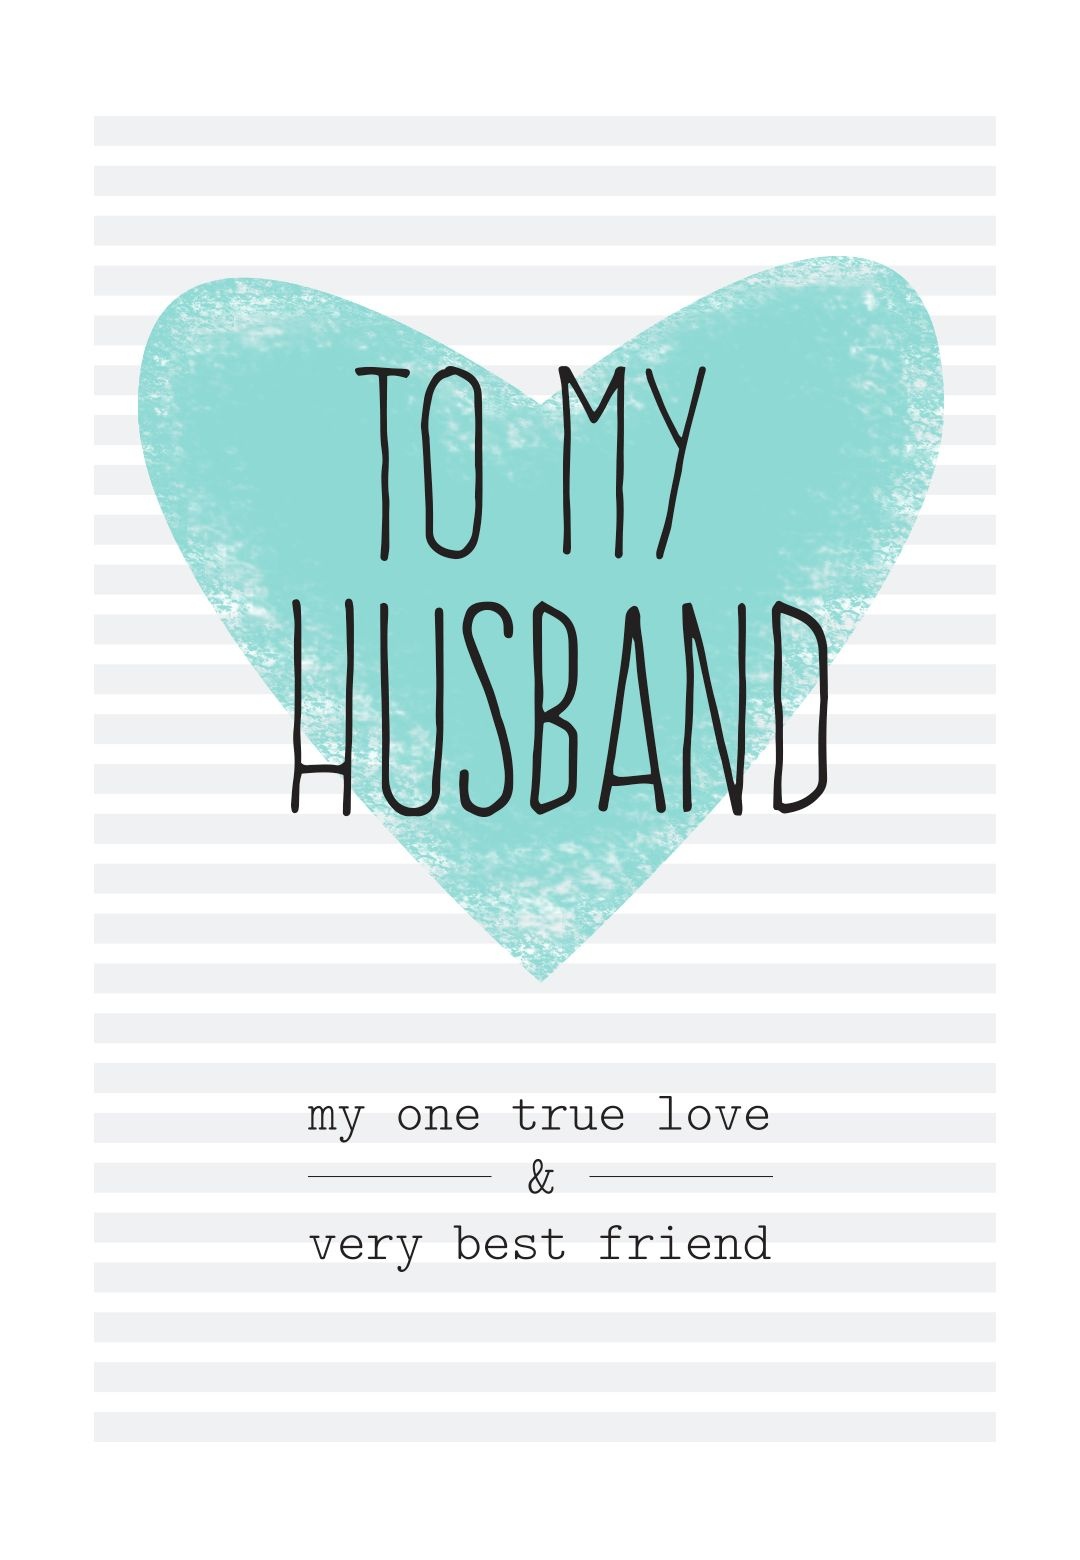 Free Printable Birthday Cards For Husband Free Printable